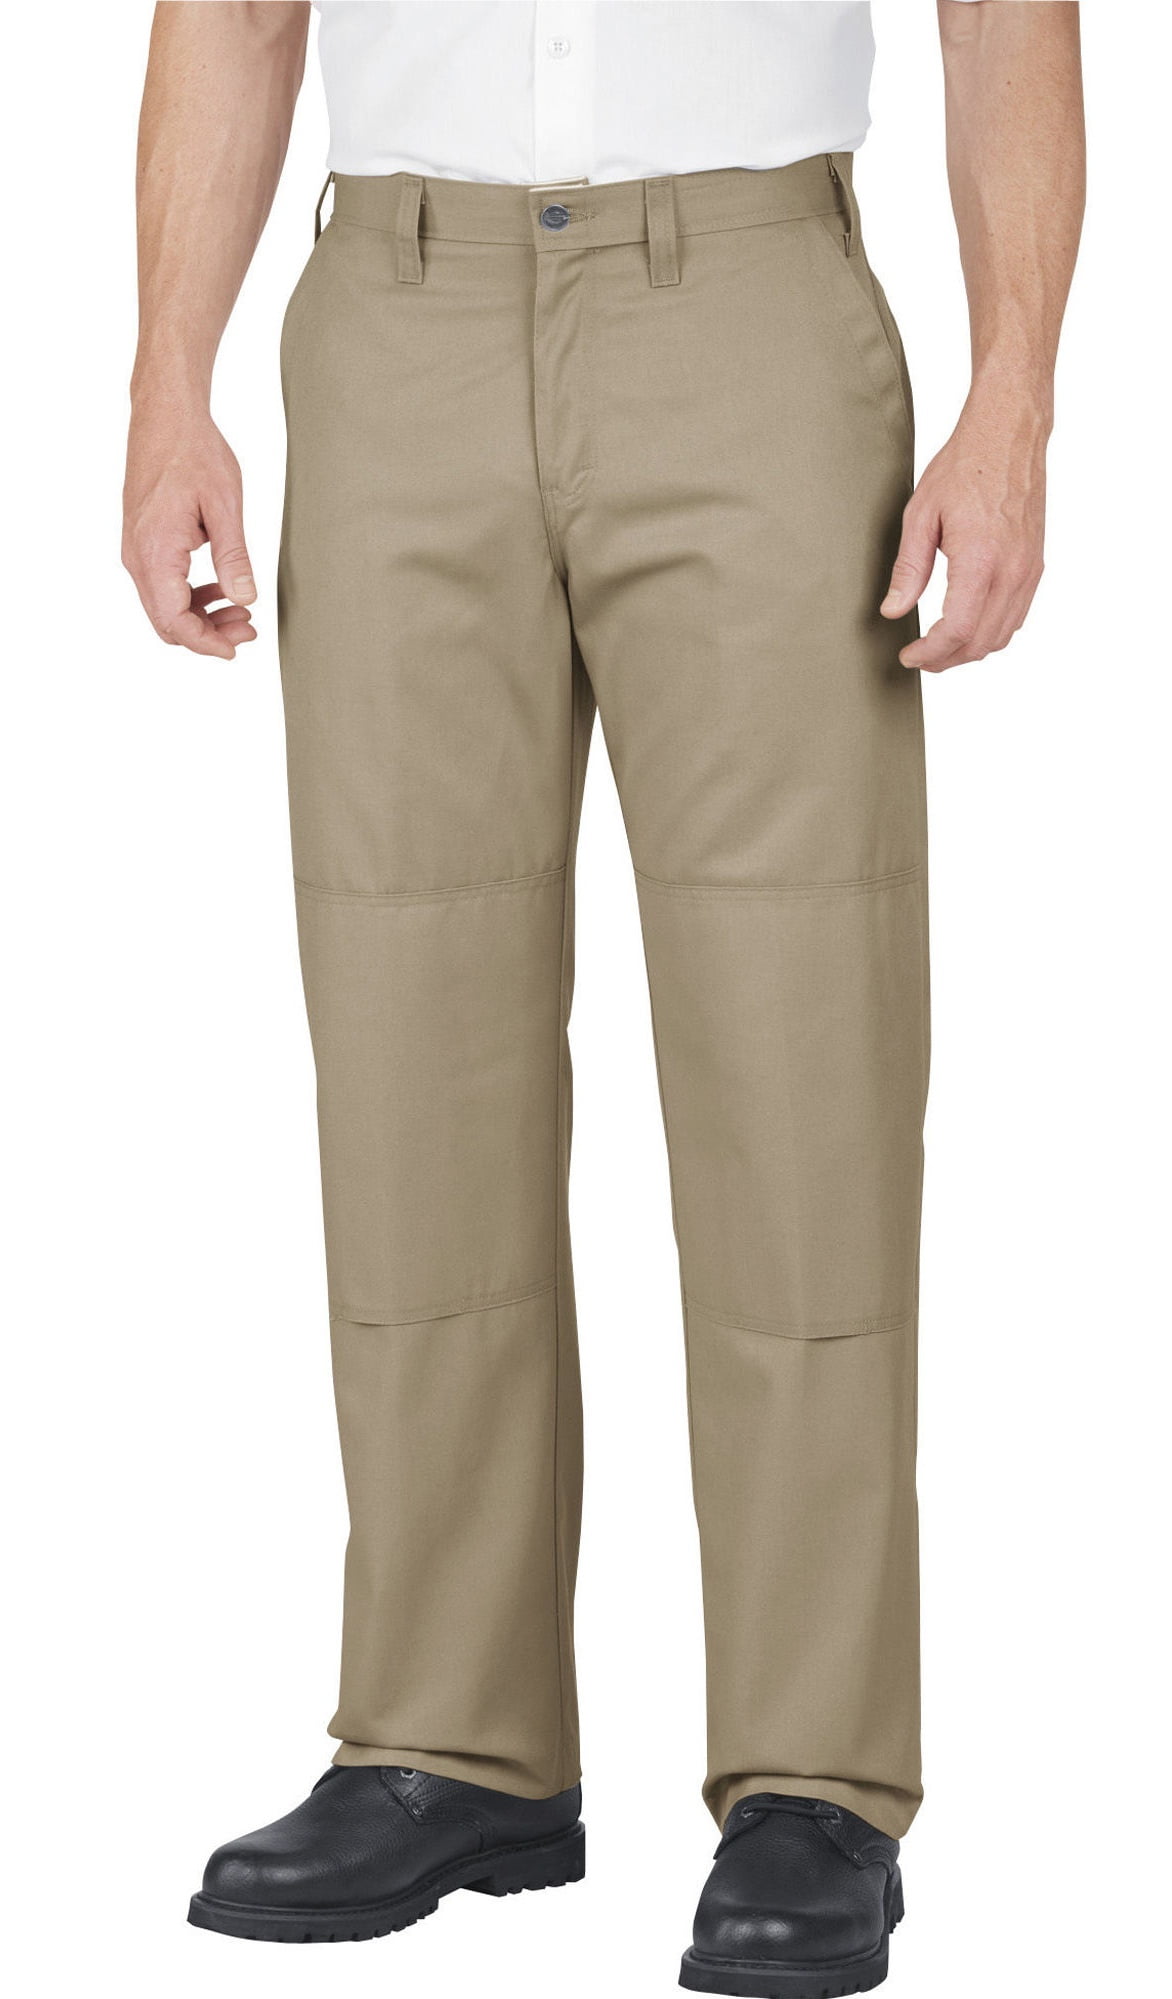 Dickies Men's Industrial Double Knee Pants Desert Sand 34 UL - Walmart.com